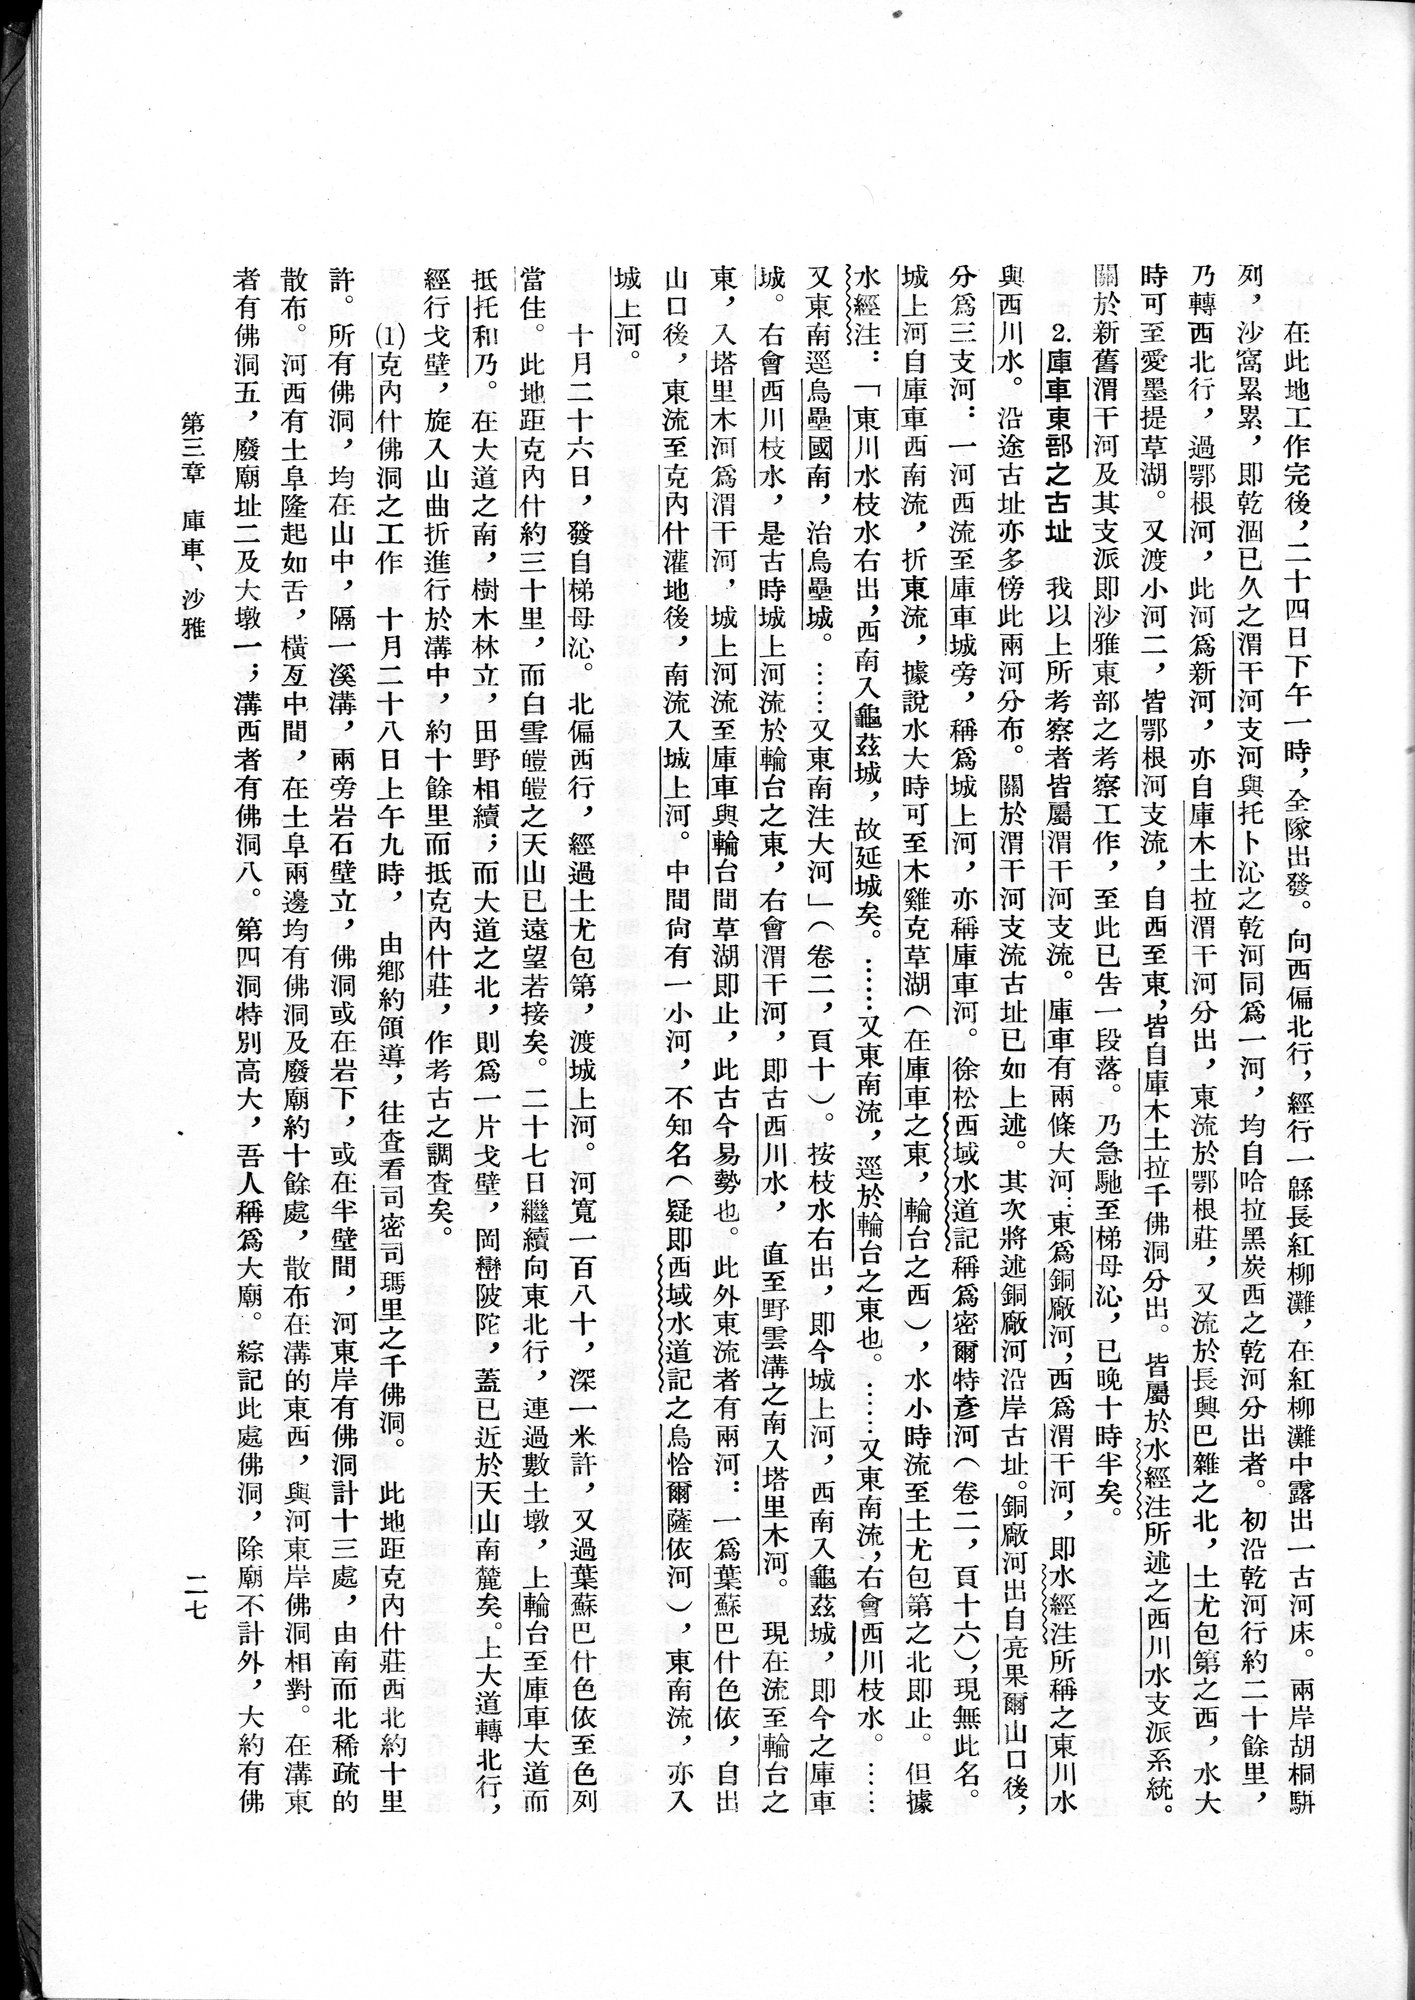 塔里木盆地考古記 : vol.1 / Page 51 (Grayscale High Resolution Image)